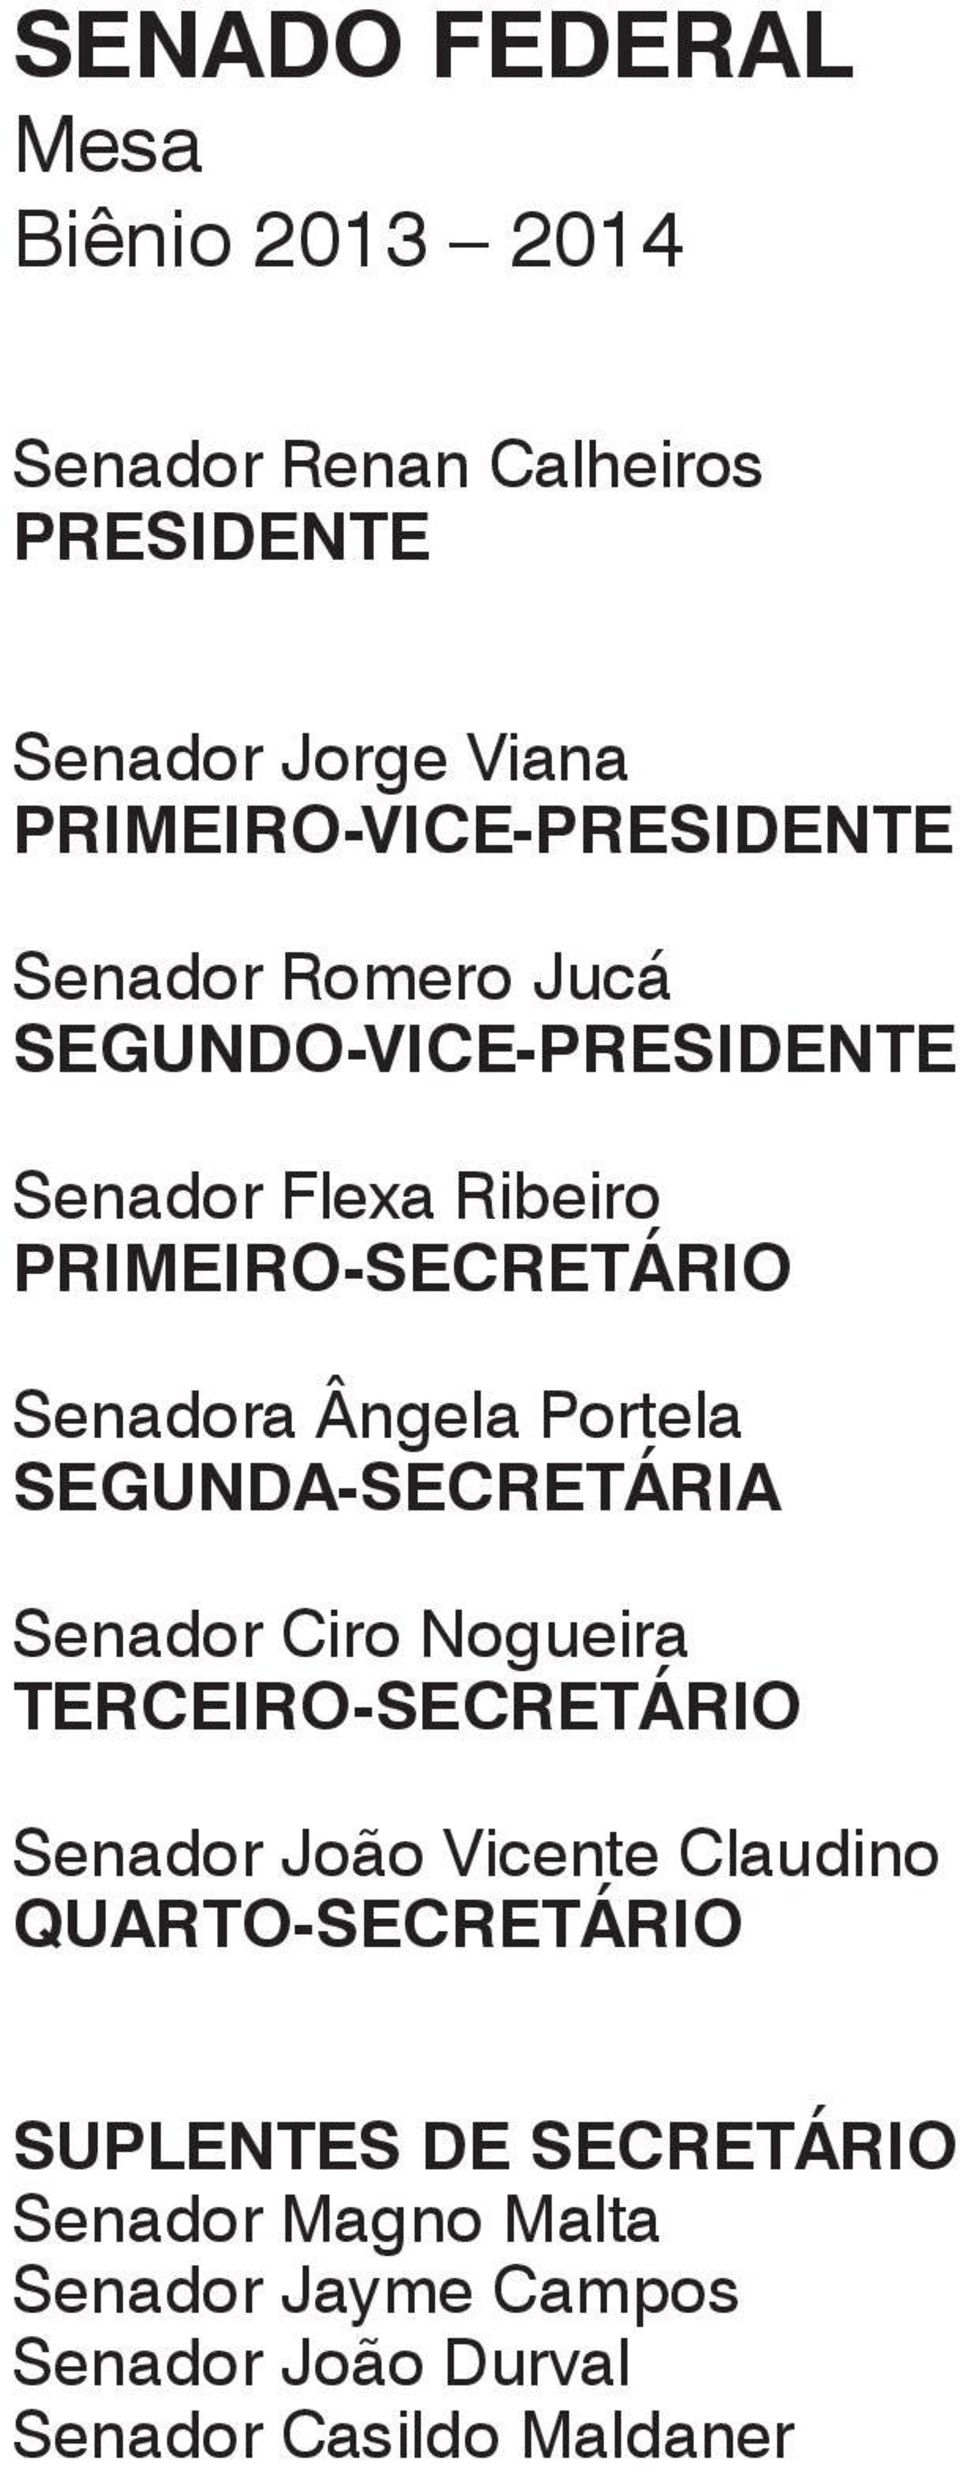 Senadora Ângela Portela SEGUNDA-SECRETÁRIA Senador Ciro Nogueira TERCEIRO-SECRETÁRIO Senador João Vicente